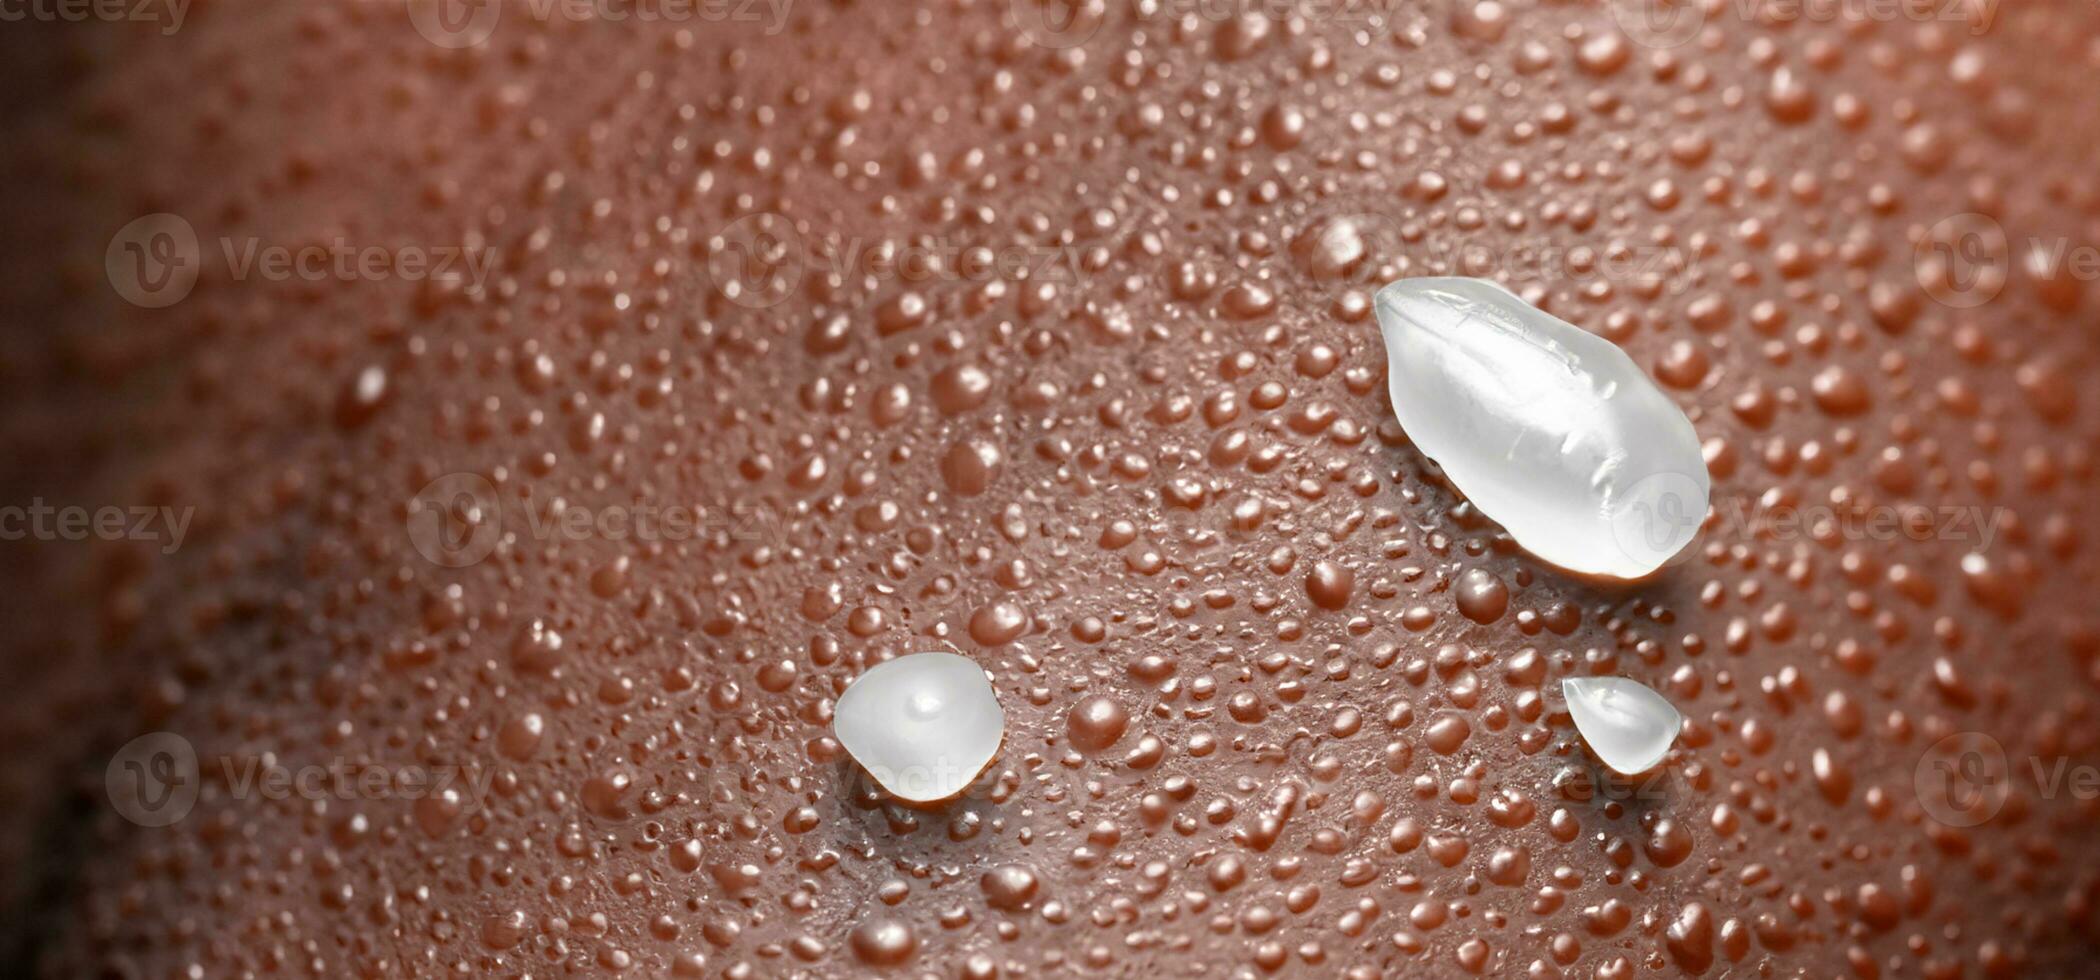 colágeno e hialuron sérum gel em pele. espirrando do hialuron gel. foto